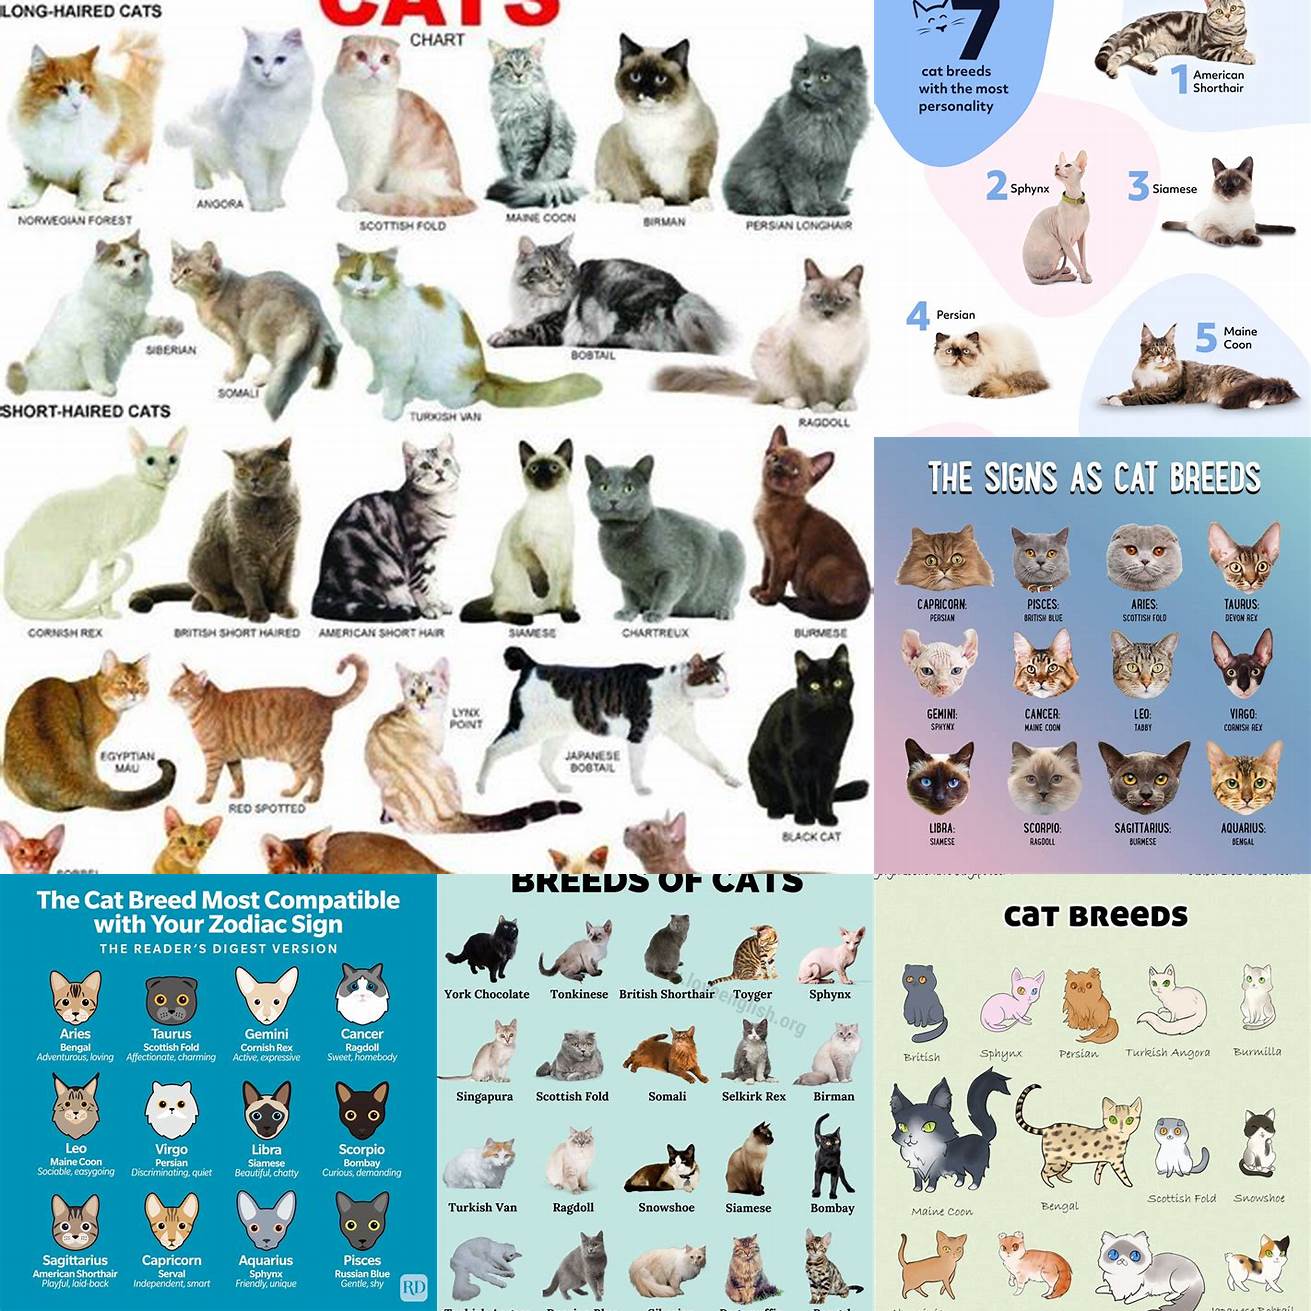 Cat Breeds and Characteristics